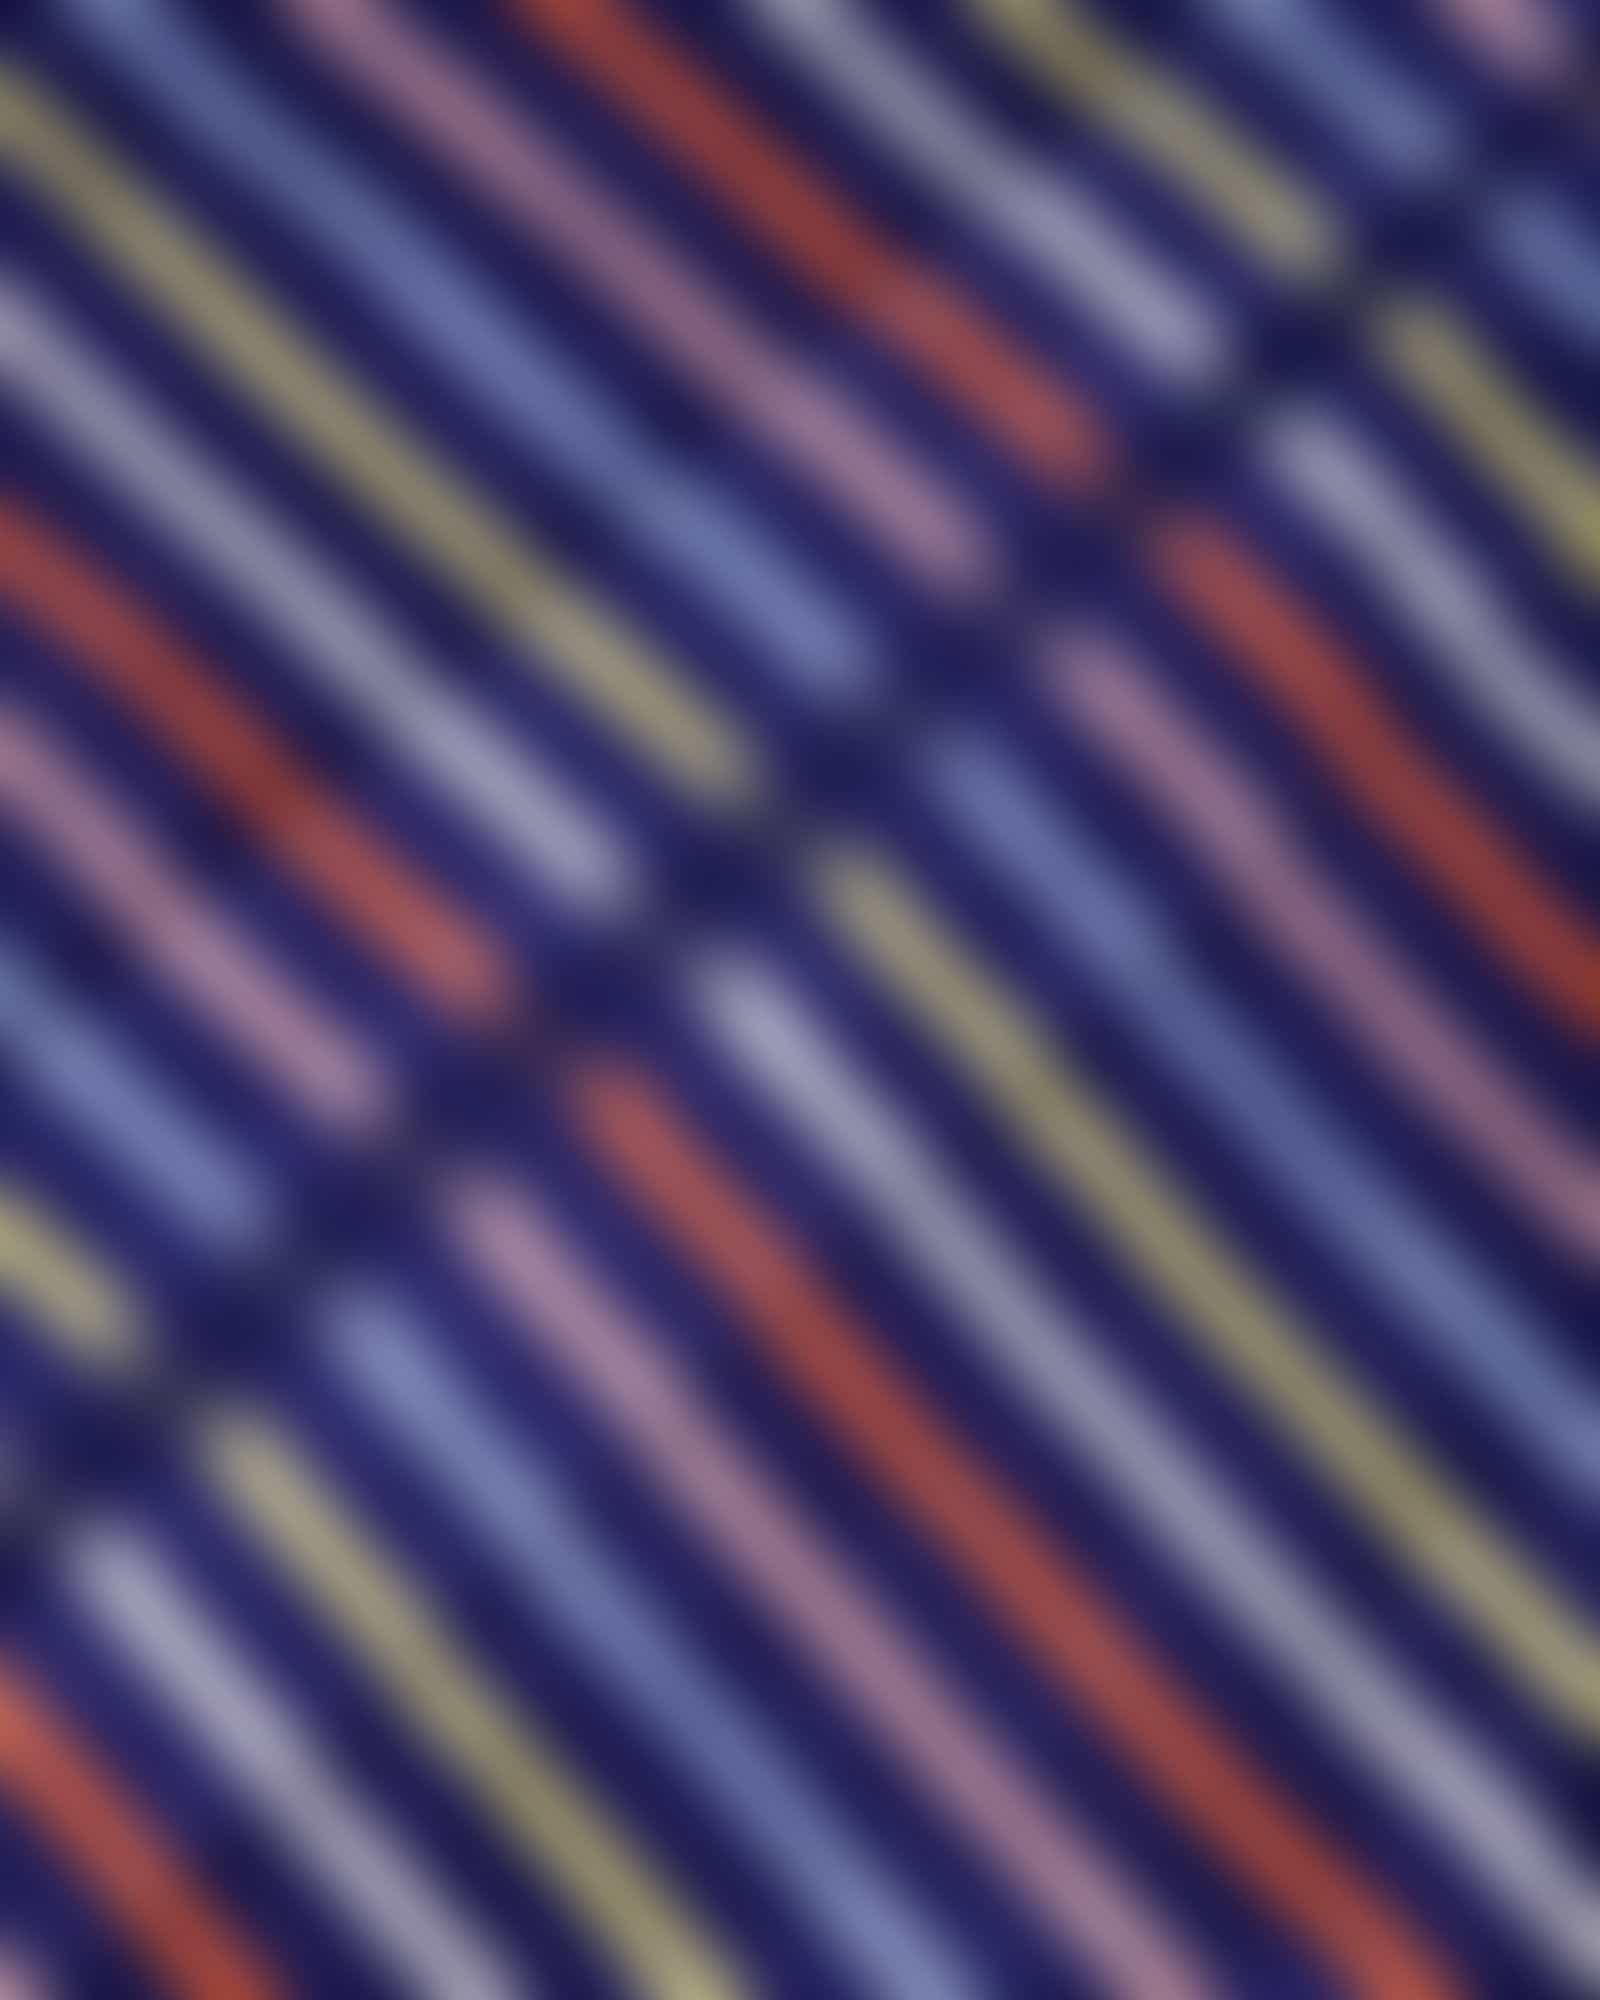 Cawö Damen Bademantel Kapuze 3344 - Farbe: blau-multicolor - 12 Detailbild 3